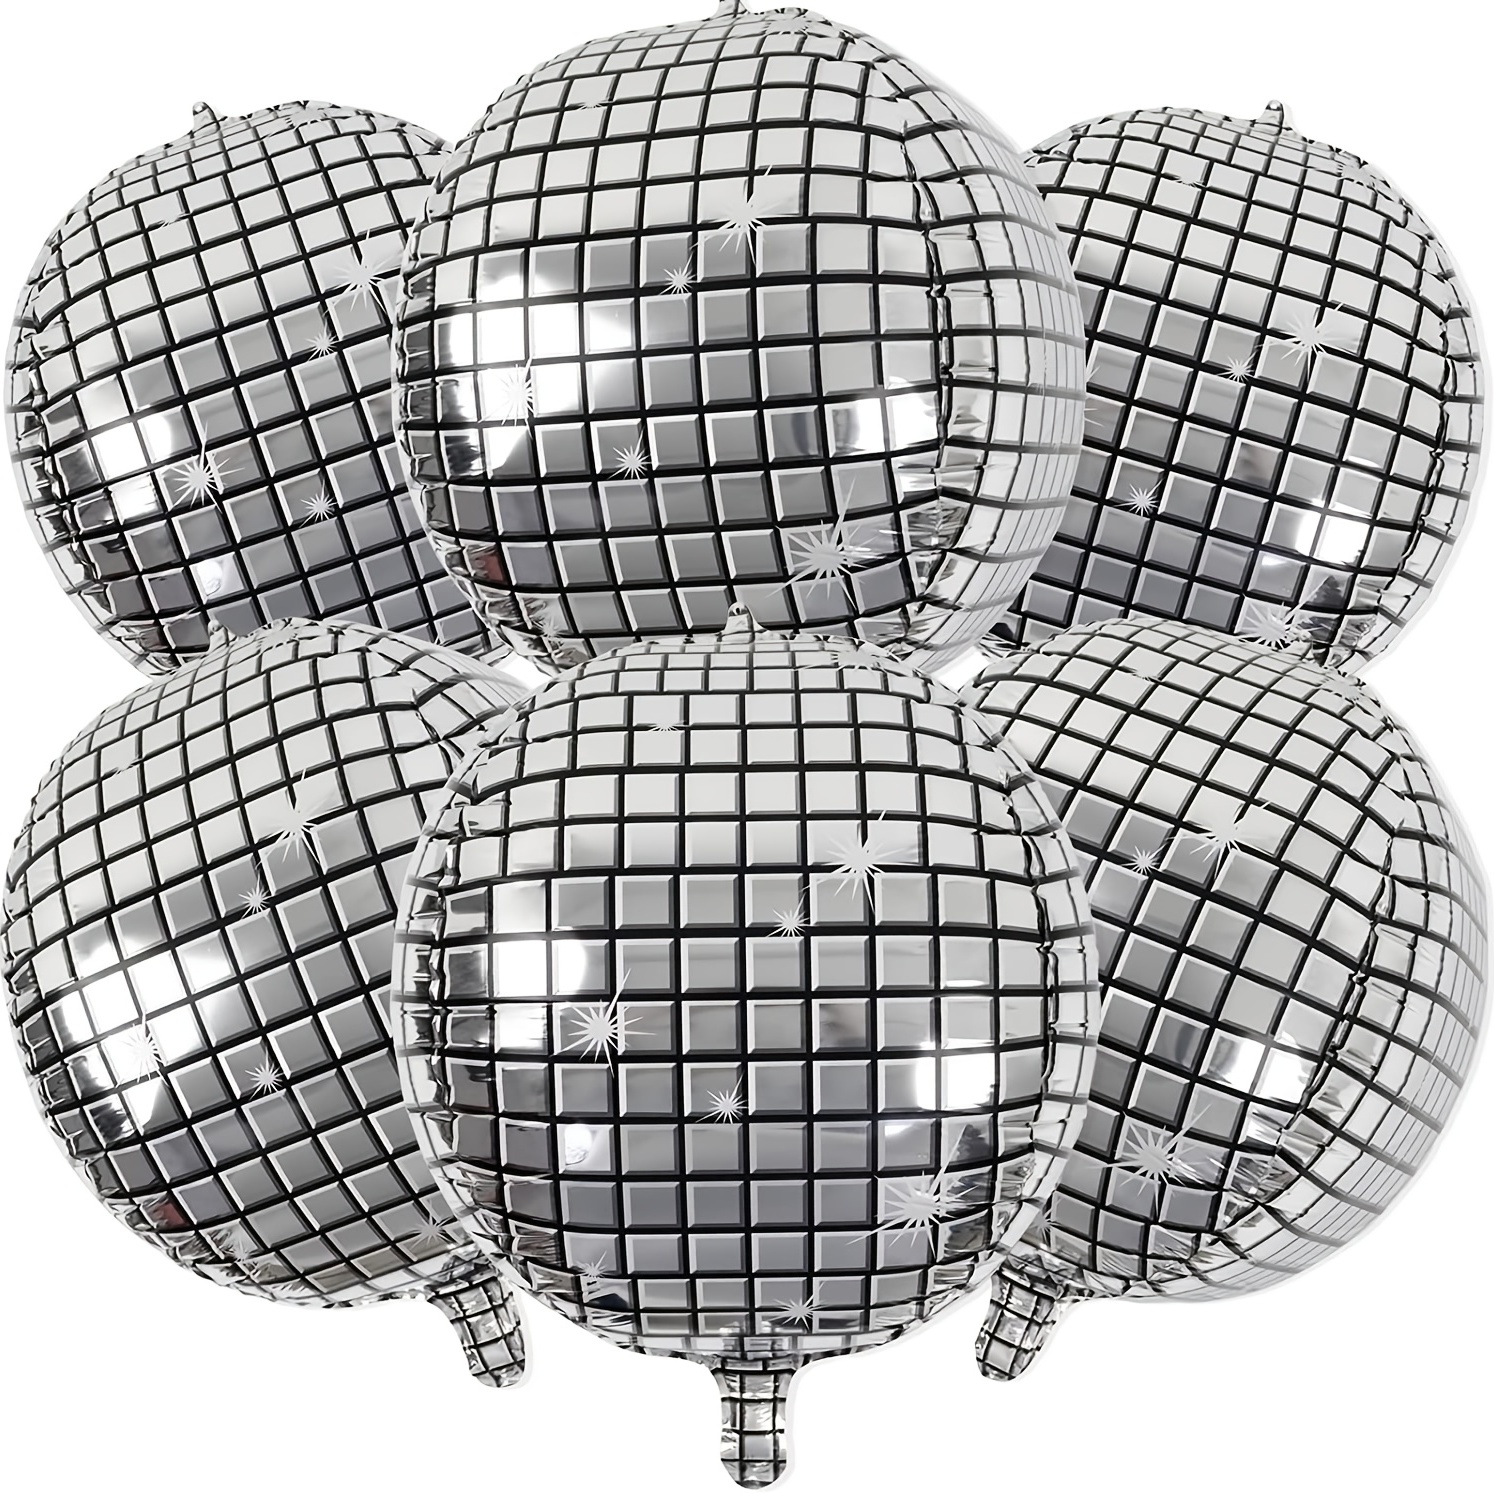 Disco Party Decor Bar Silver Ball Helium Balloon Dance Party